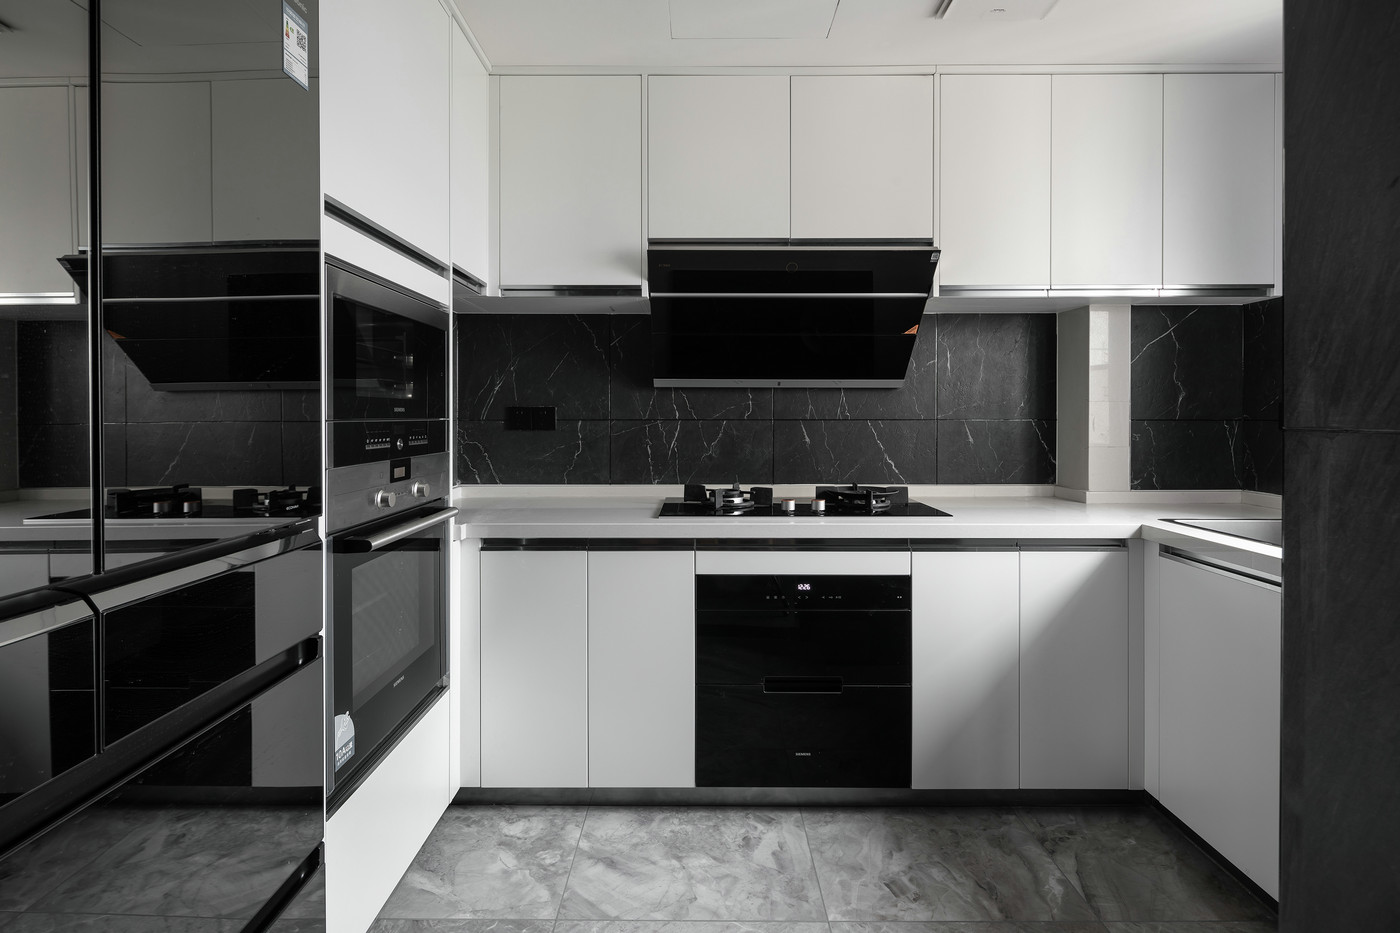 厨房背景以大面积黑色为主,搭配白色橱柜,空间不呆板,充满秩序